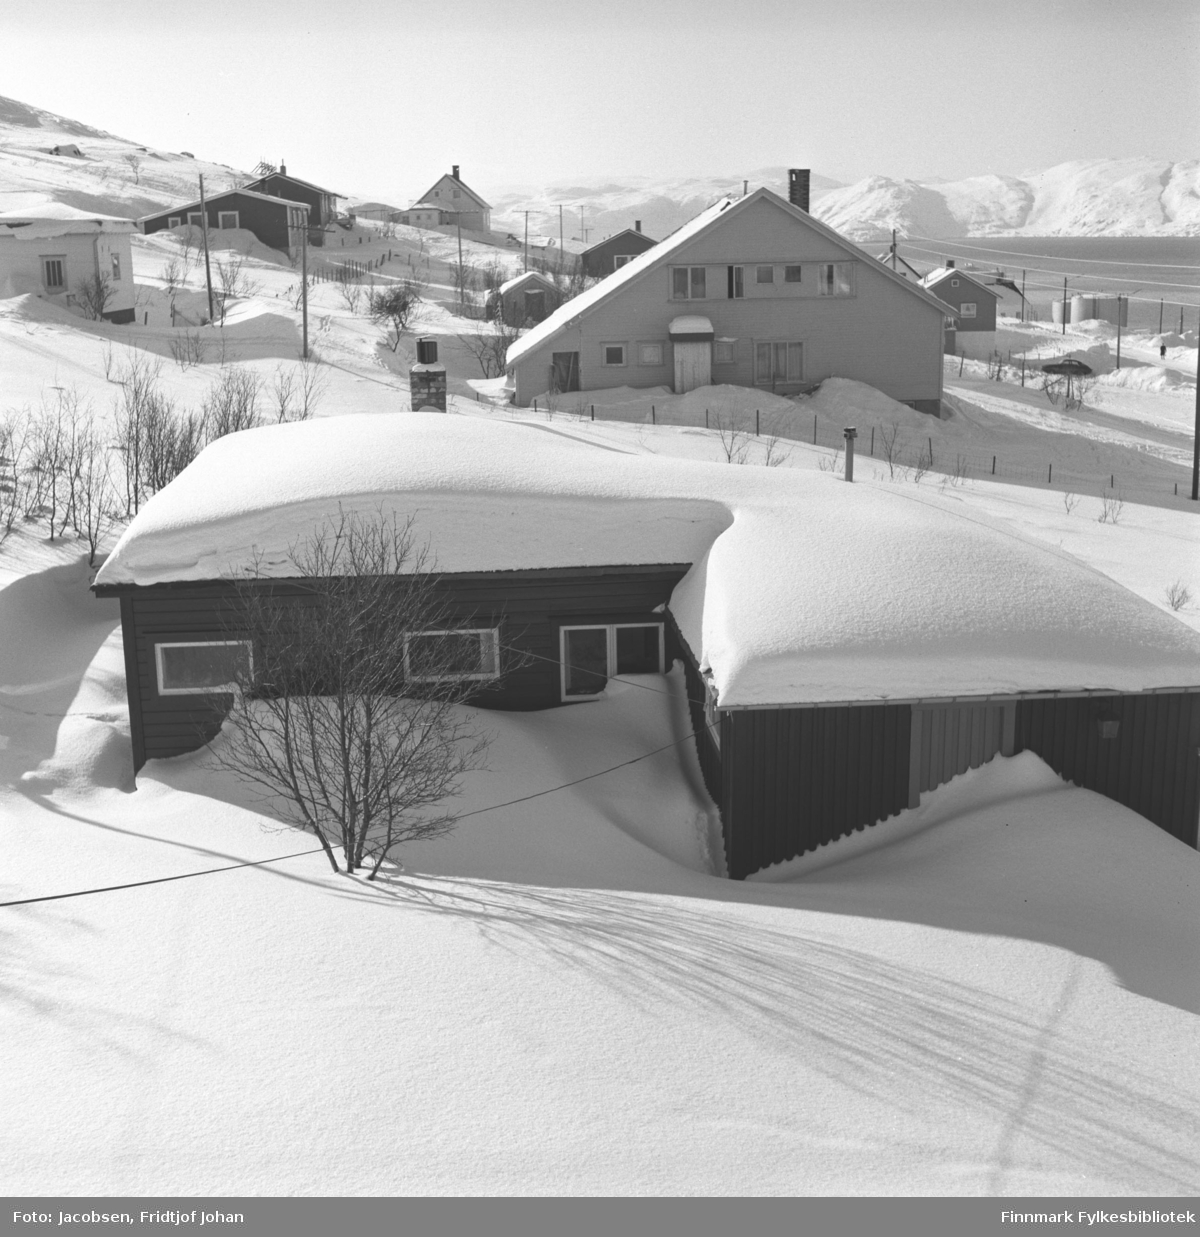 Fotografi tatt fra Arne Nakkens hus i Rypefjord mot Stornes. Nærmest ligger Fridtjof og Aase Jacobsens hytte.